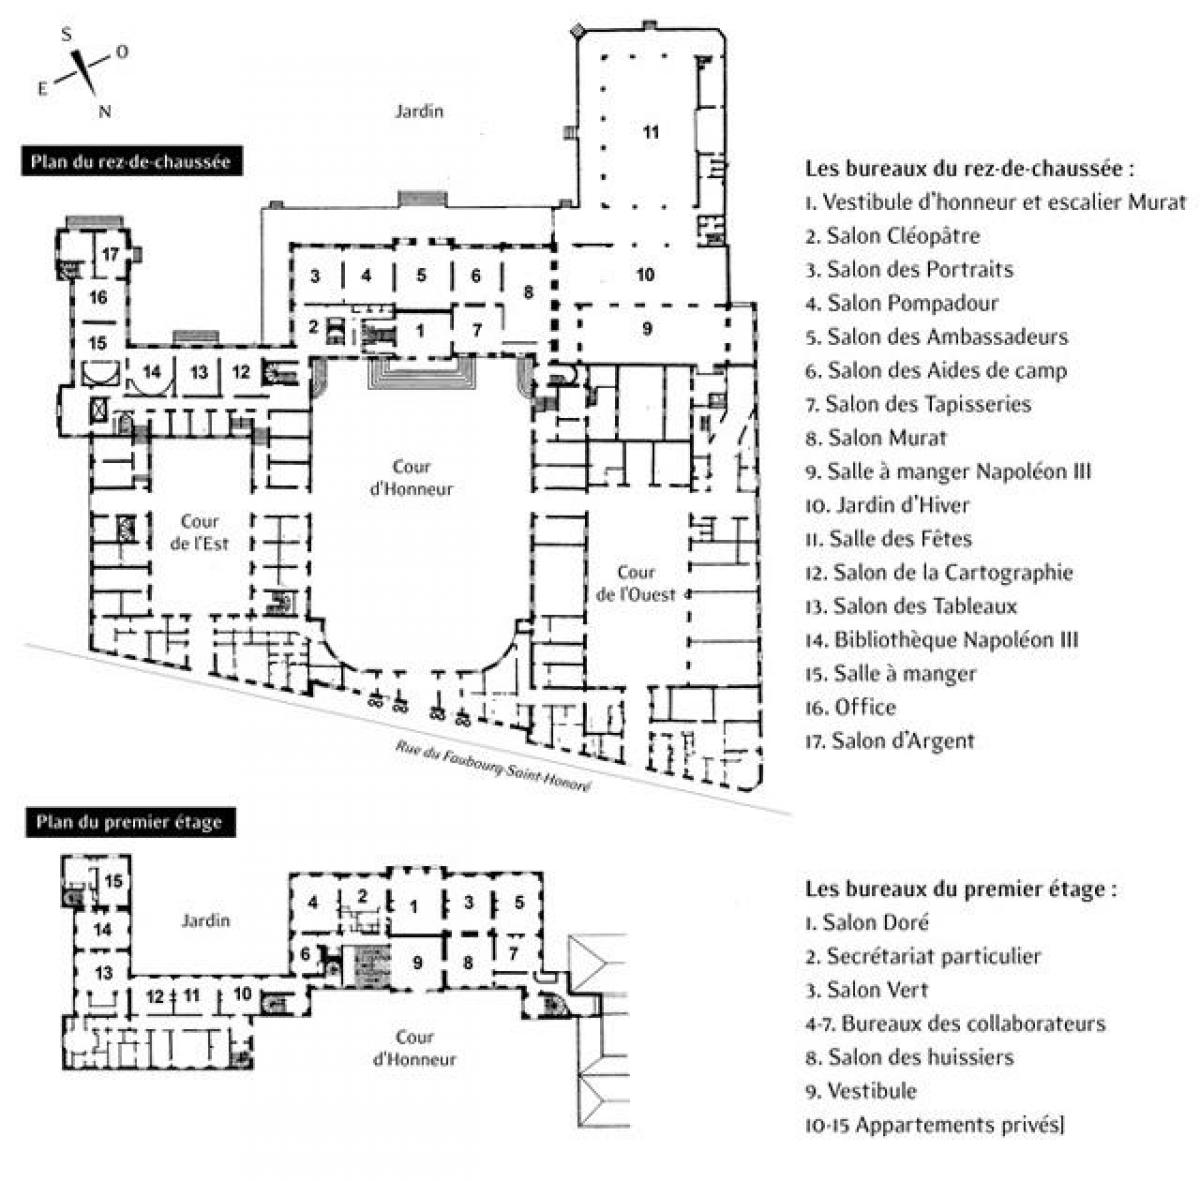 Térkép Az Élysée-Palotában